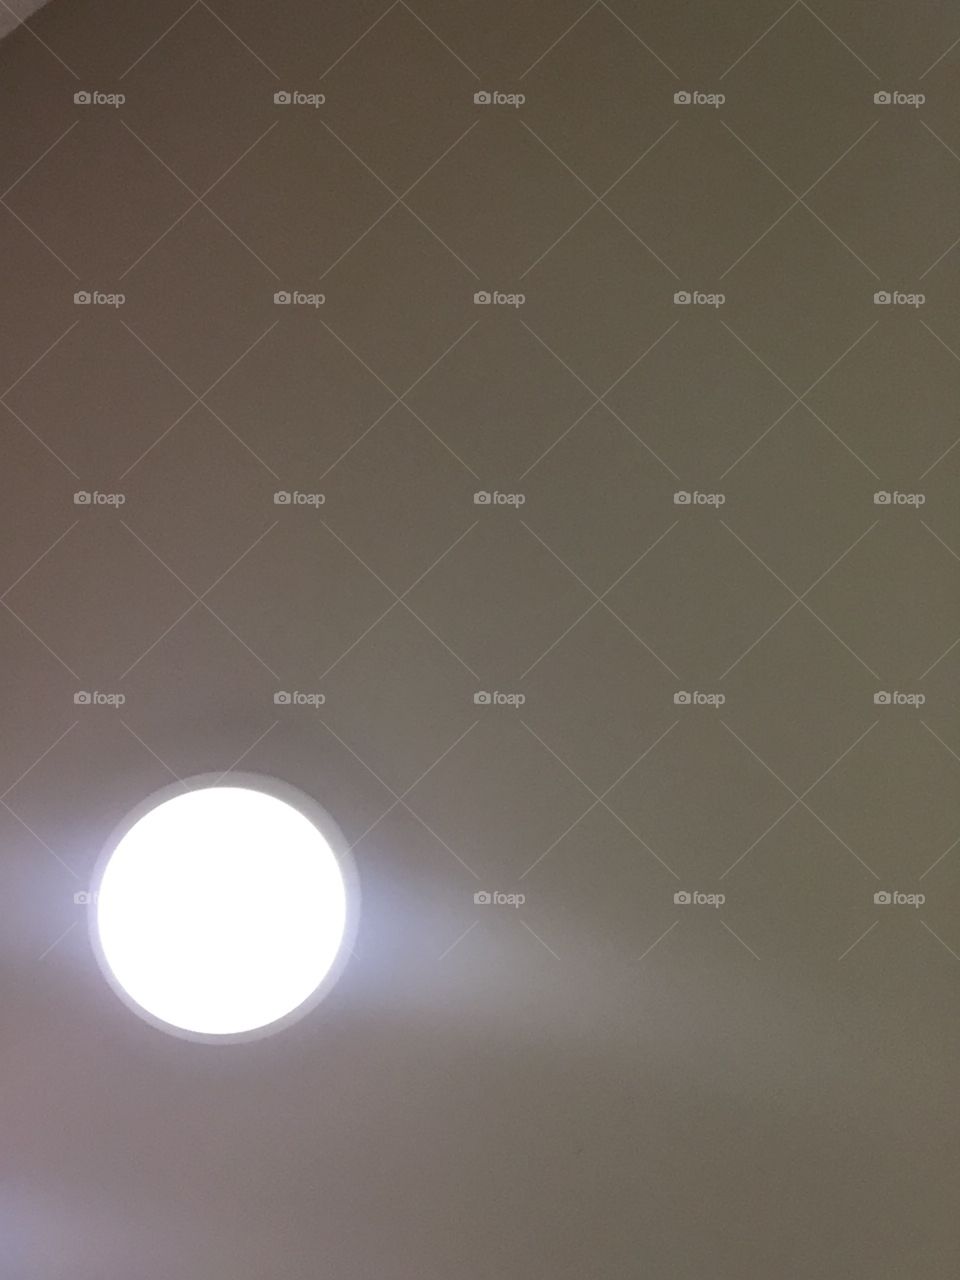 White light on the ceiling